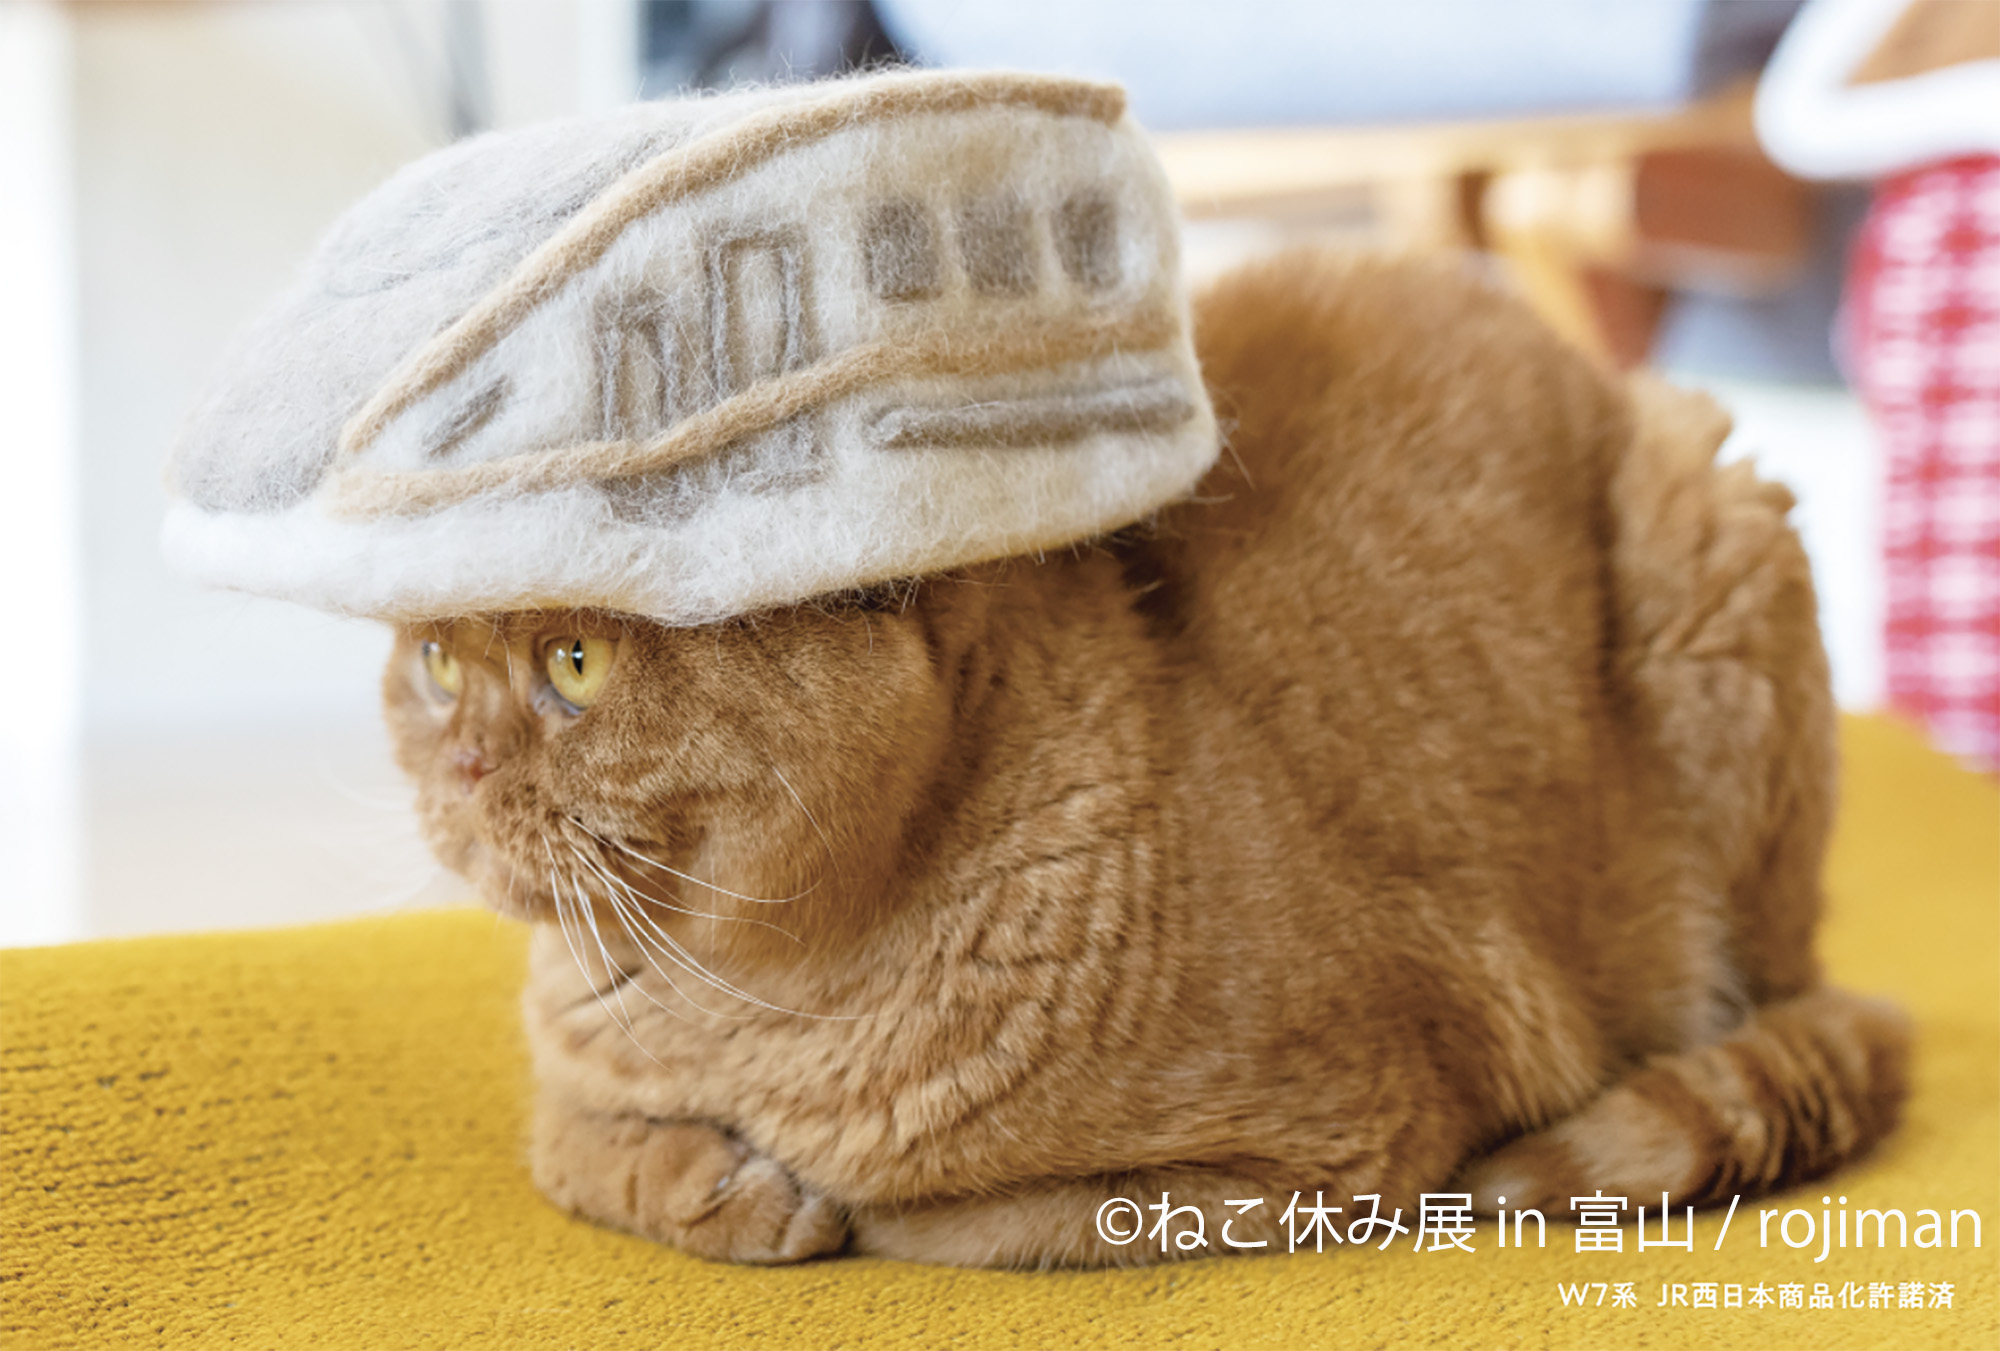 貓咪休假展in 富山」將在北陸初上陸! 毛茸茸猫咪們的療癒作品有300件 